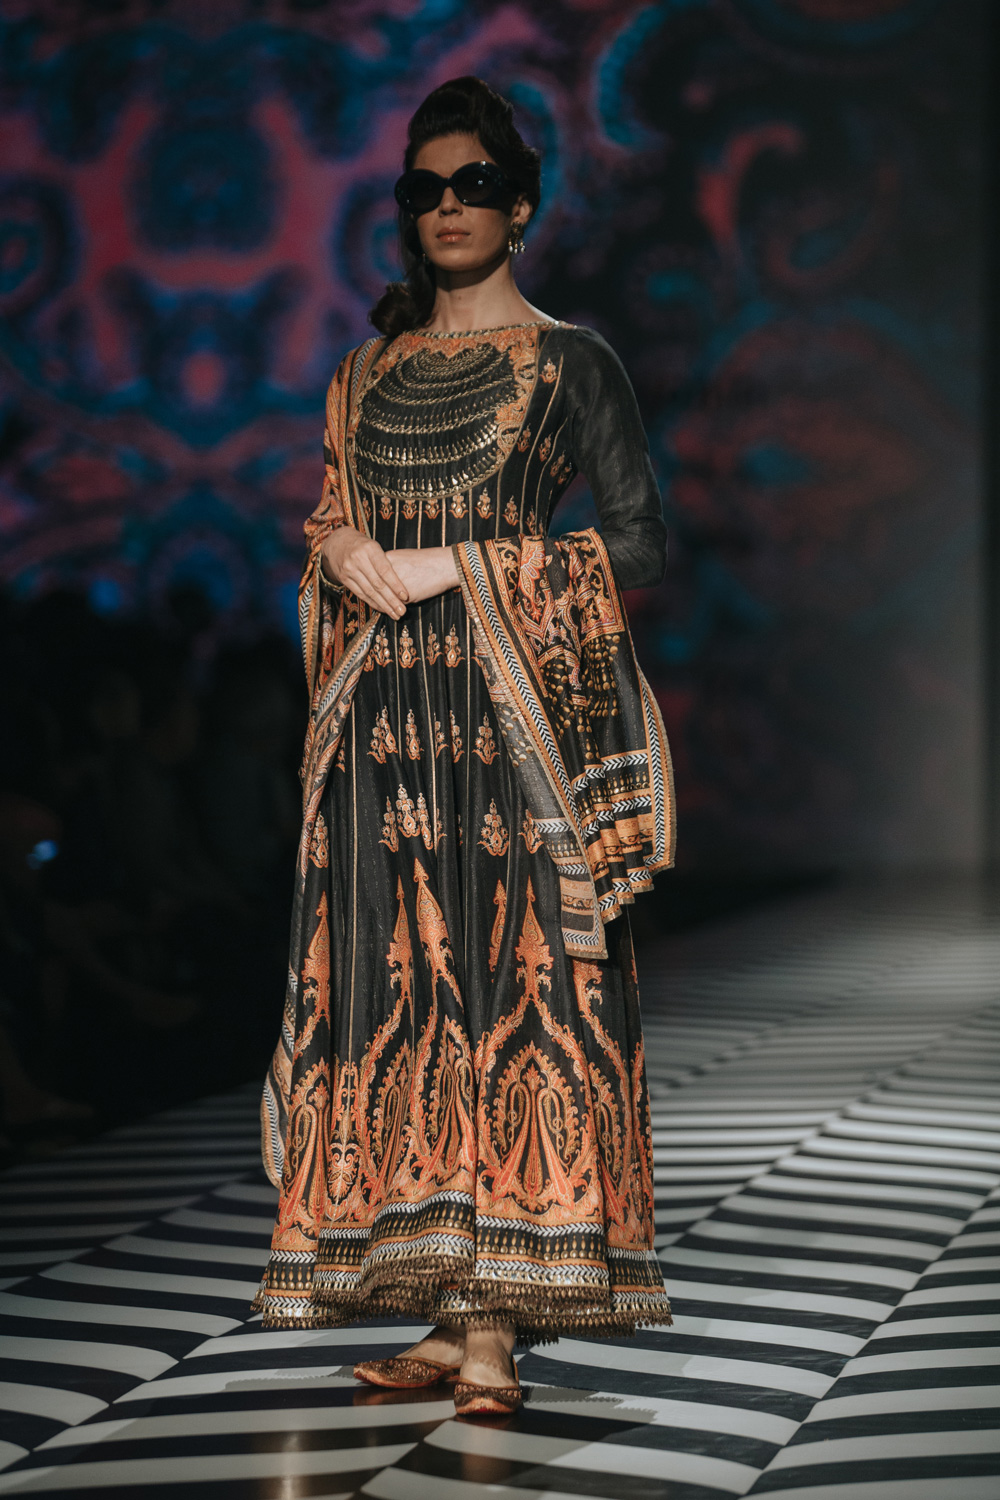 JJ Valaya FDCI Amazon India Fashion Week Spring Summer 2018 Look 20